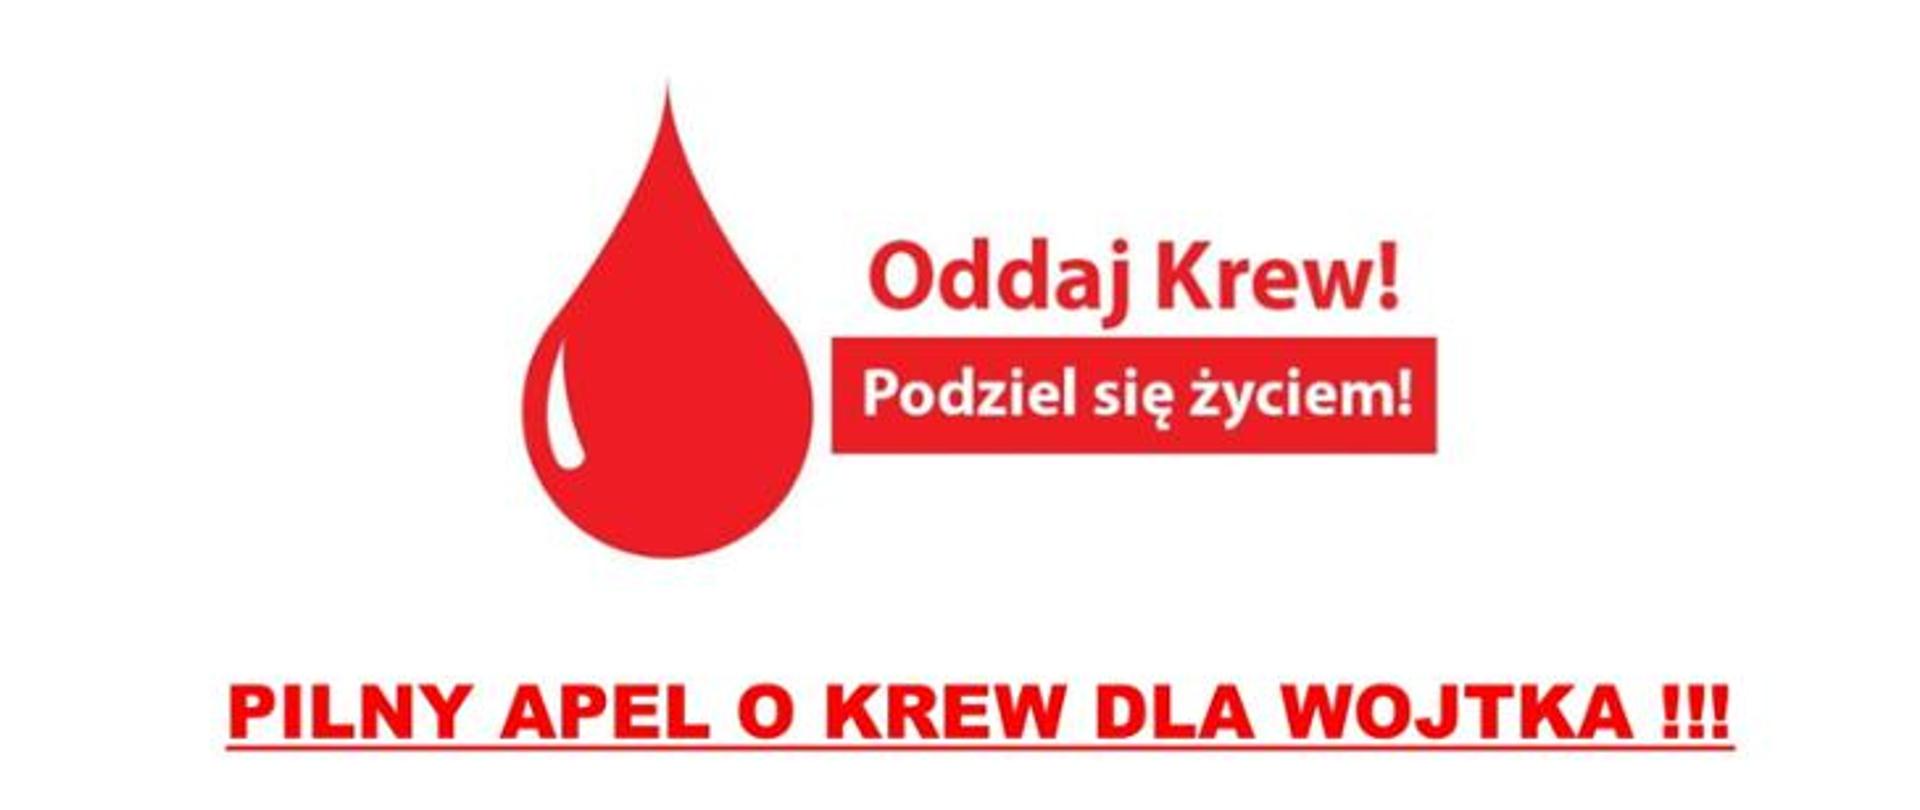 Pilny apel o krew dla Wojtka - Oddaj Krew, podziel się życiem!